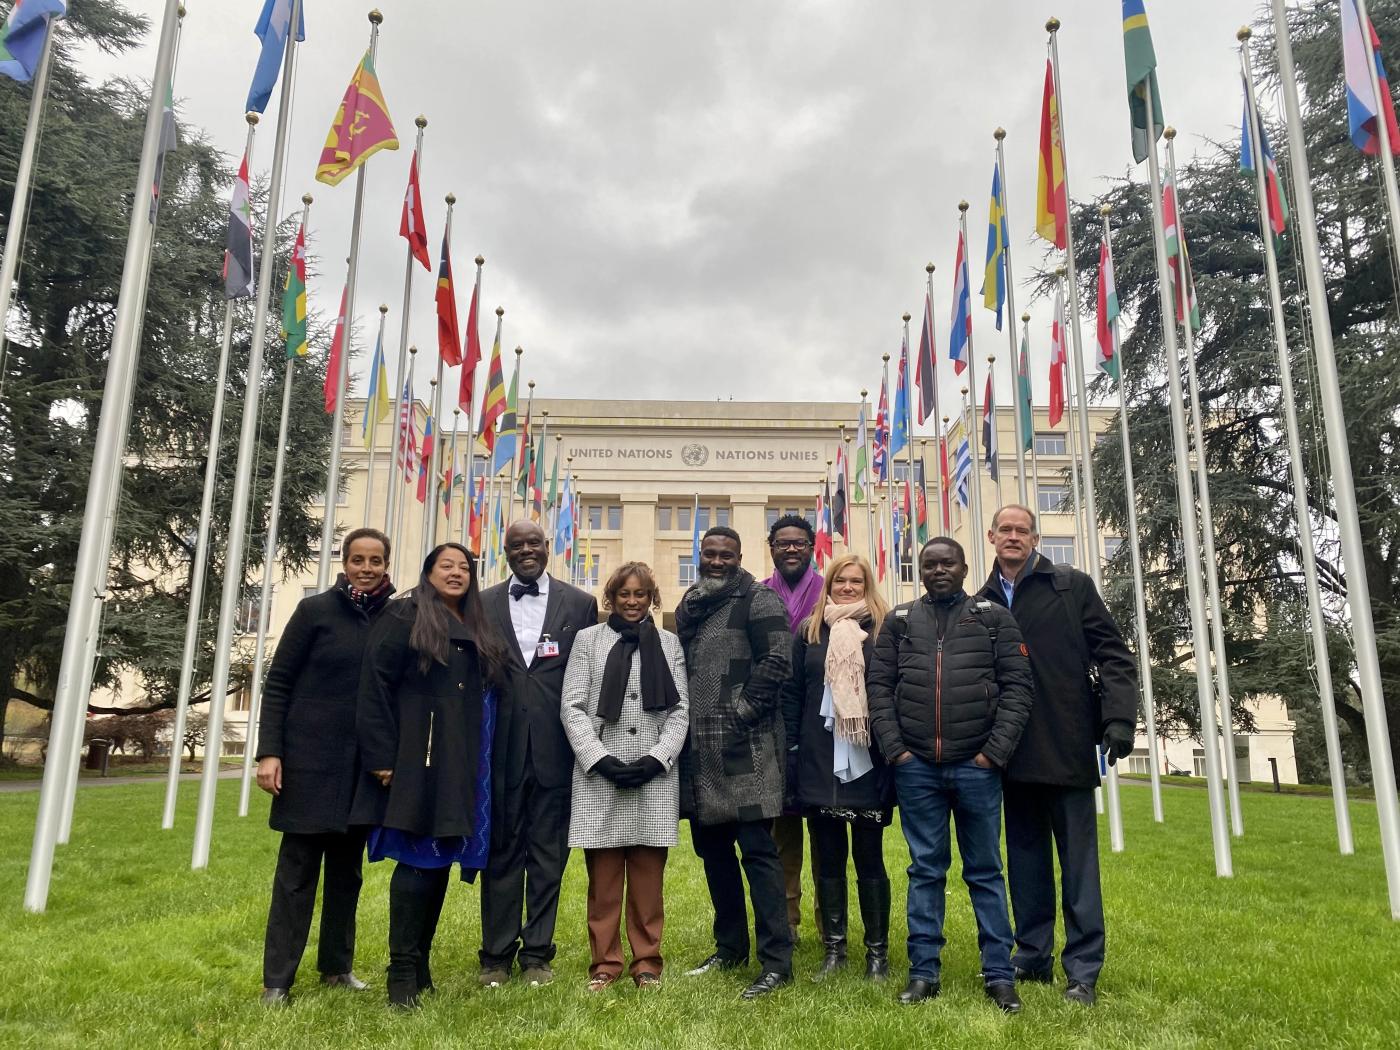 Group Photo, UN flags, Geneva